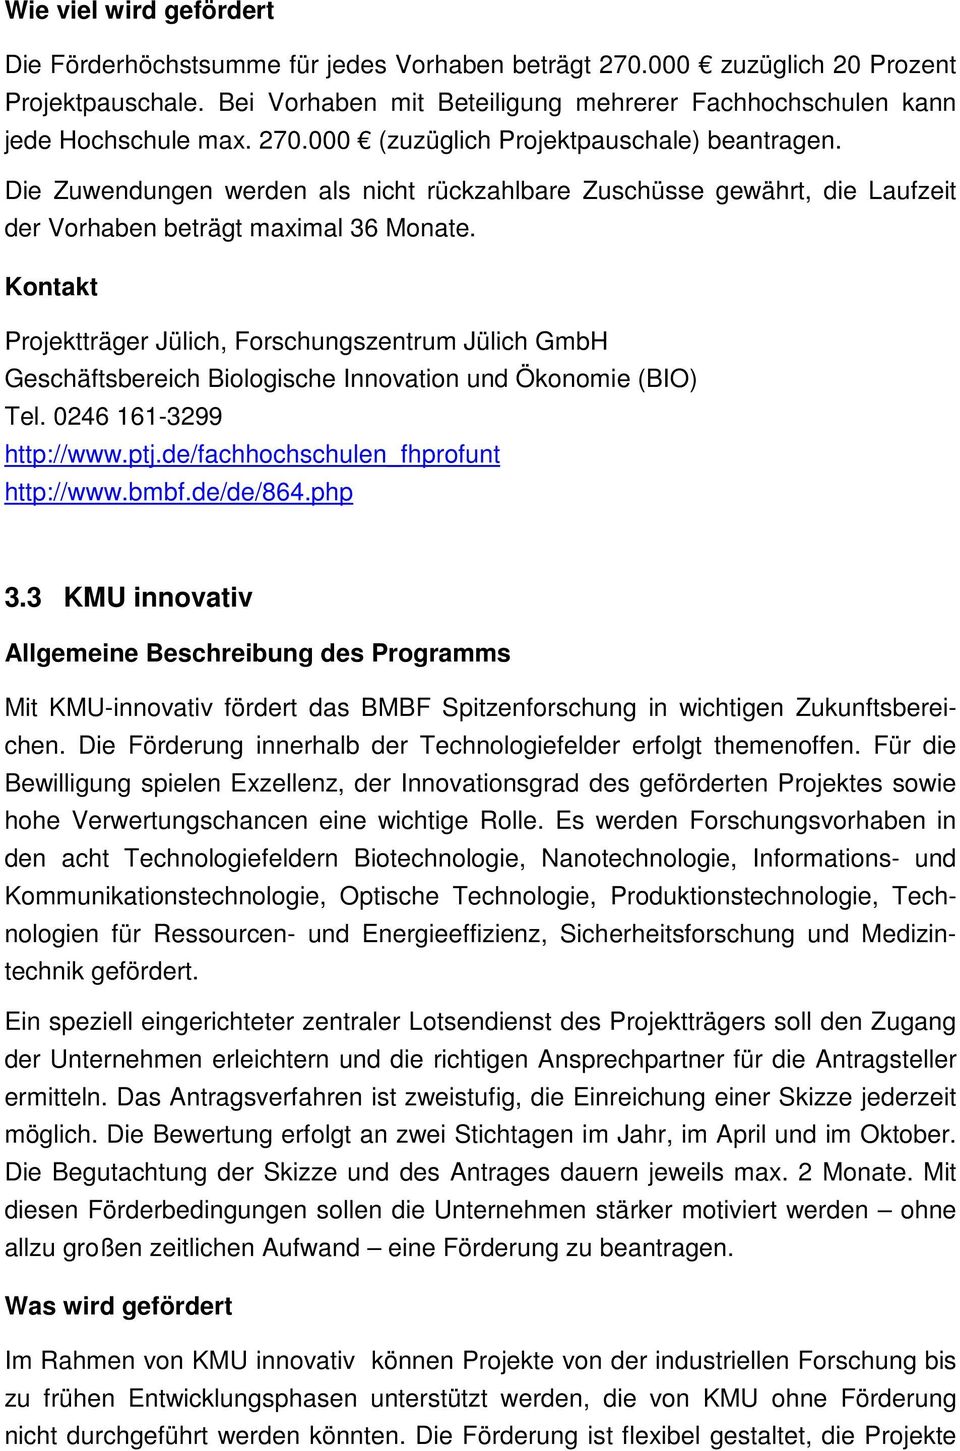 Kontakt Projektträger Jülich, Forschungszentrum Jülich GmbH Geschäftsbereich Biologische Innovation und Ökonomie (BIO) Tel. 0246 161-3299 http://www.ptj.de/fachhochschulen_fhprofunt http://www.bmbf.